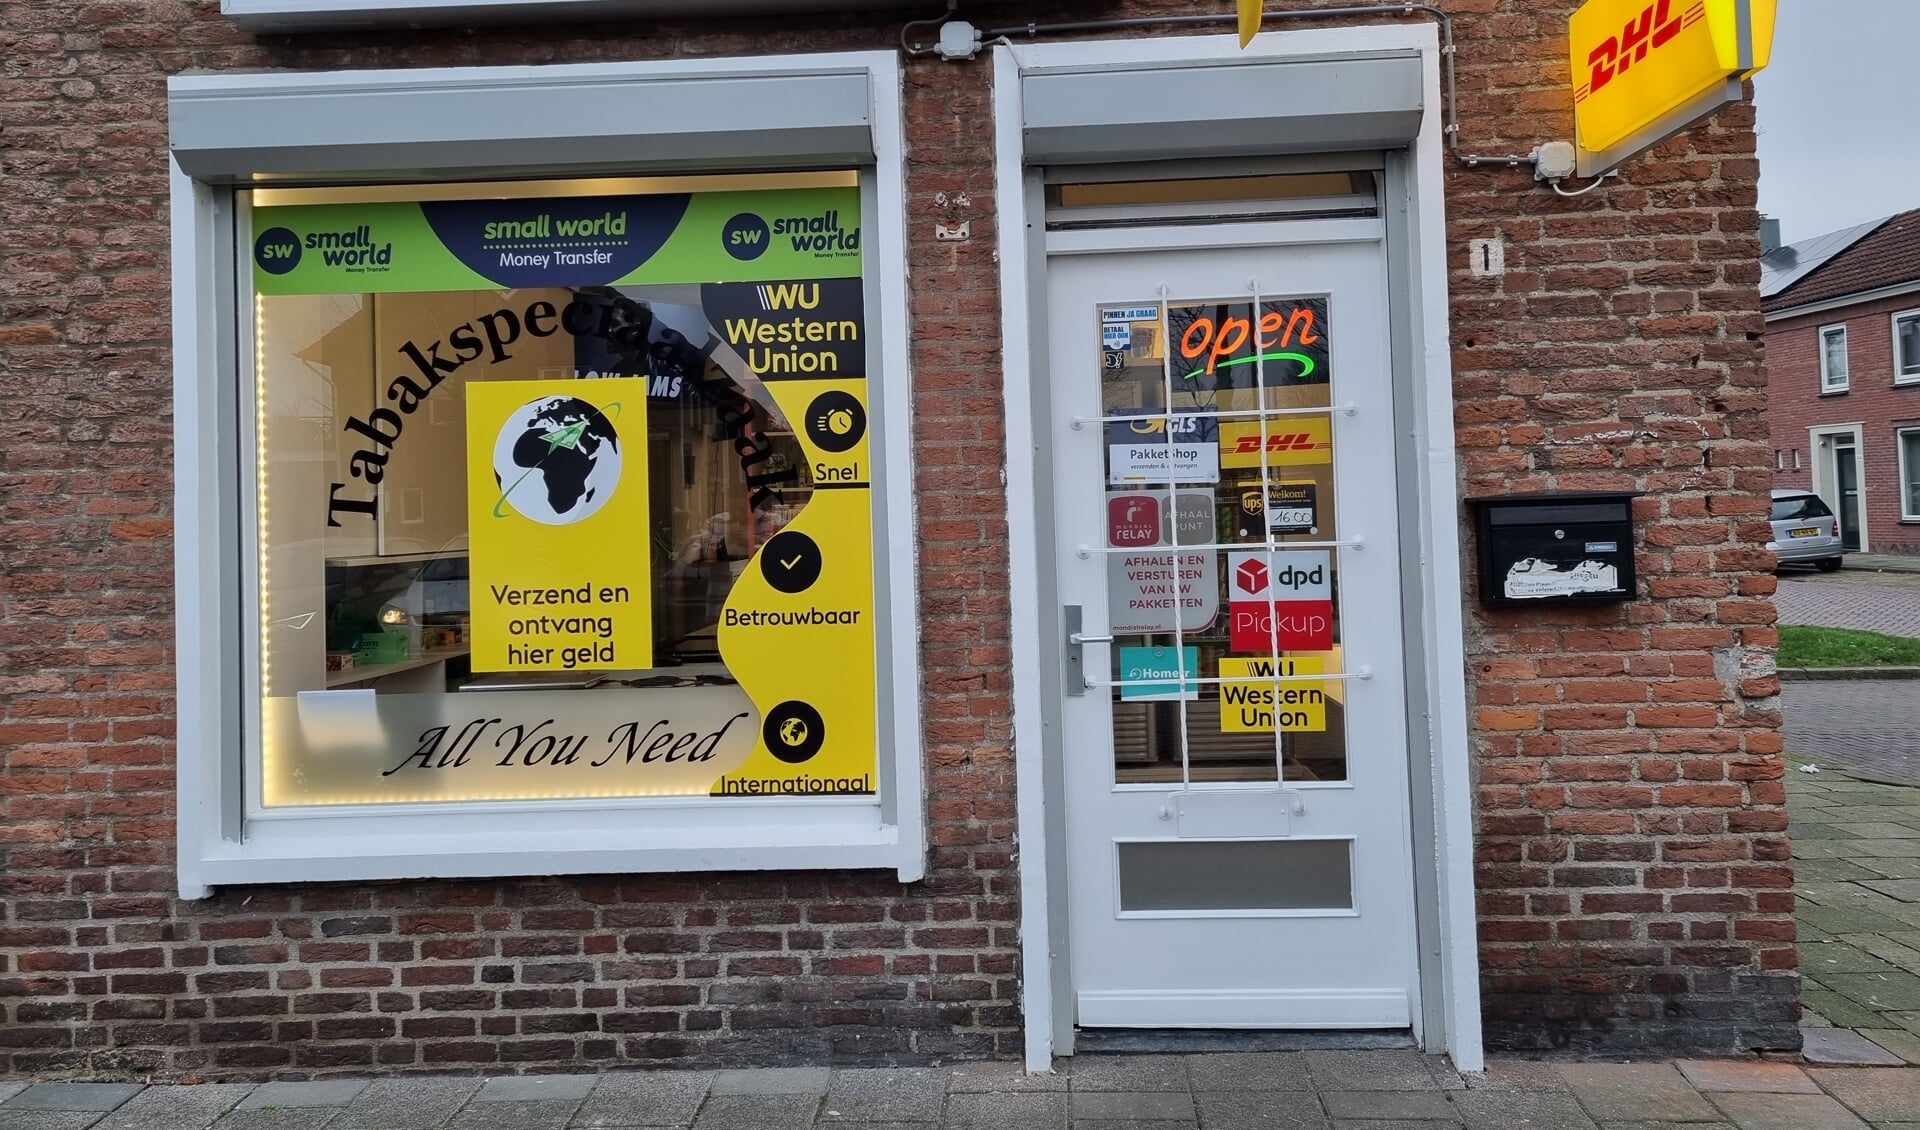 Tabakspeciaalzaak All You Need in Den Bosch heeft sinds kort een nieuwe eigenaar.